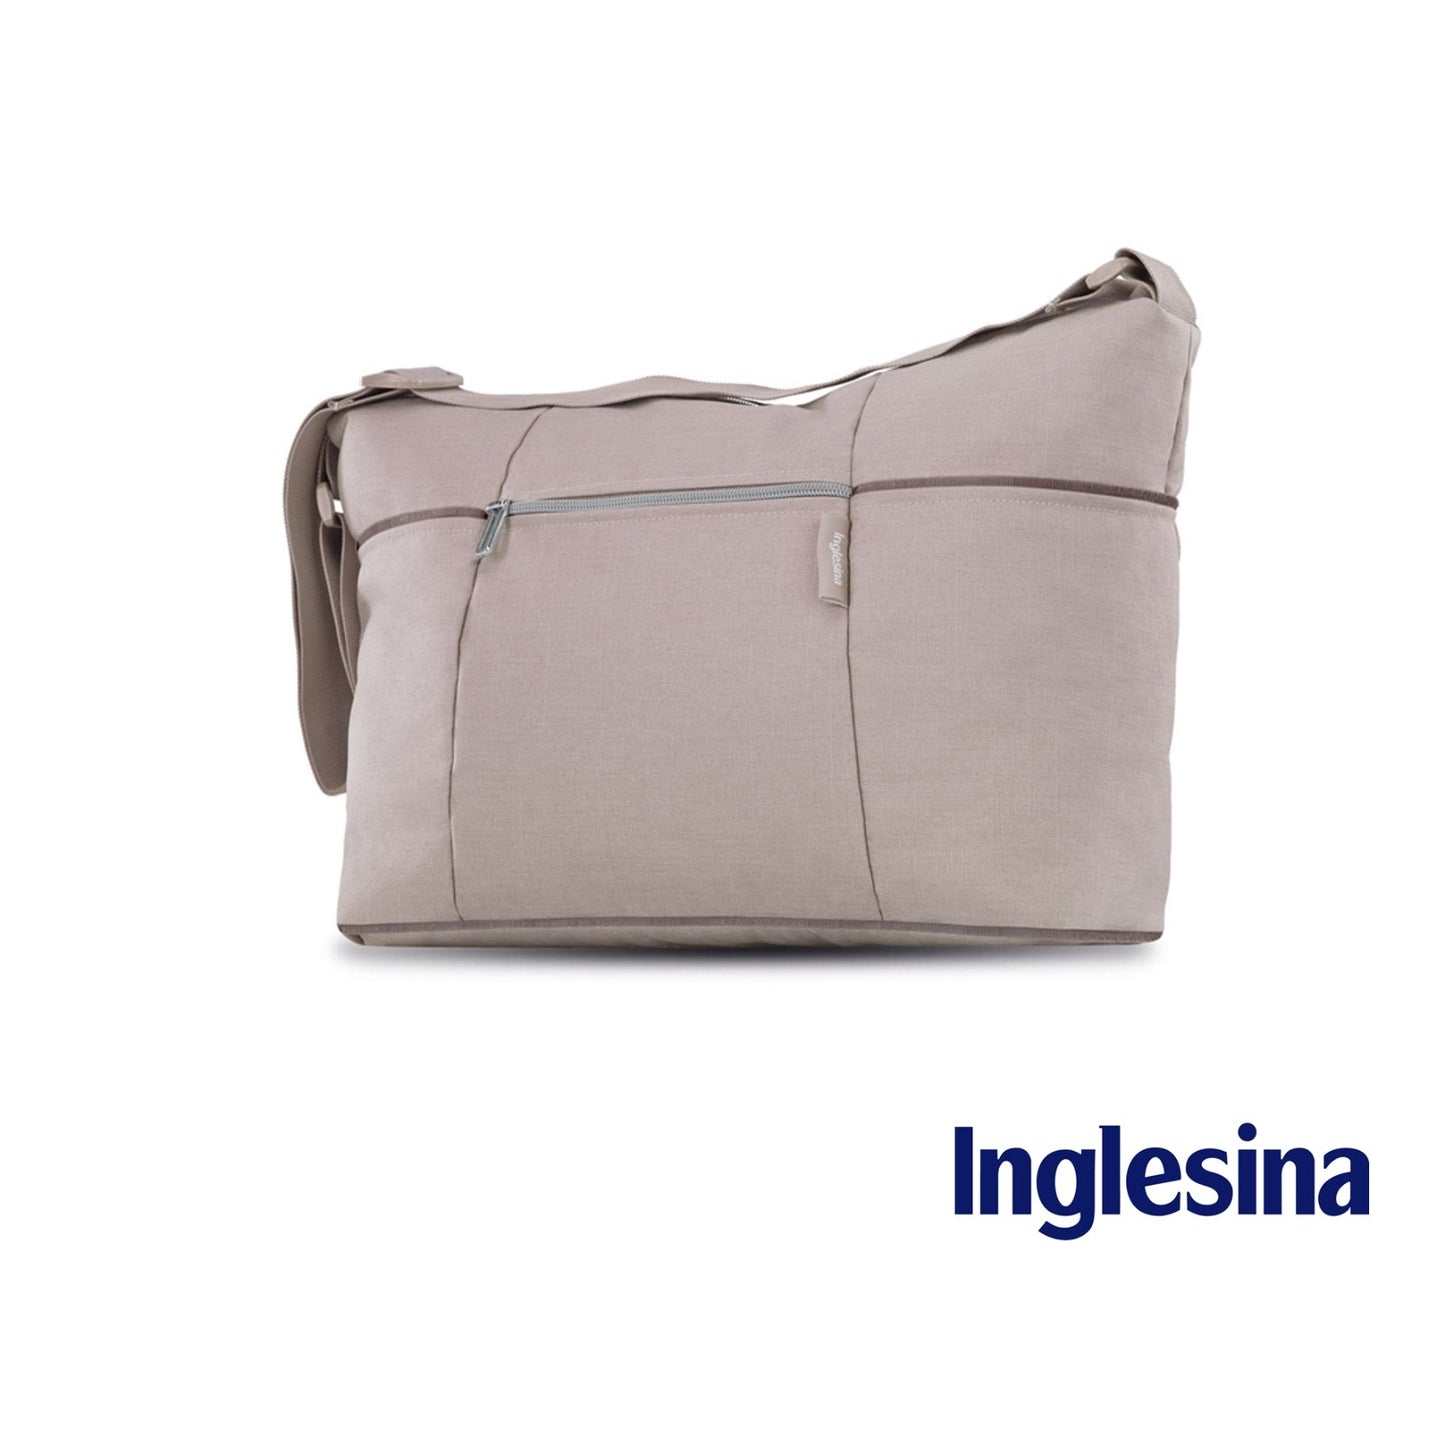 Inglesina - Day Bag trio bag